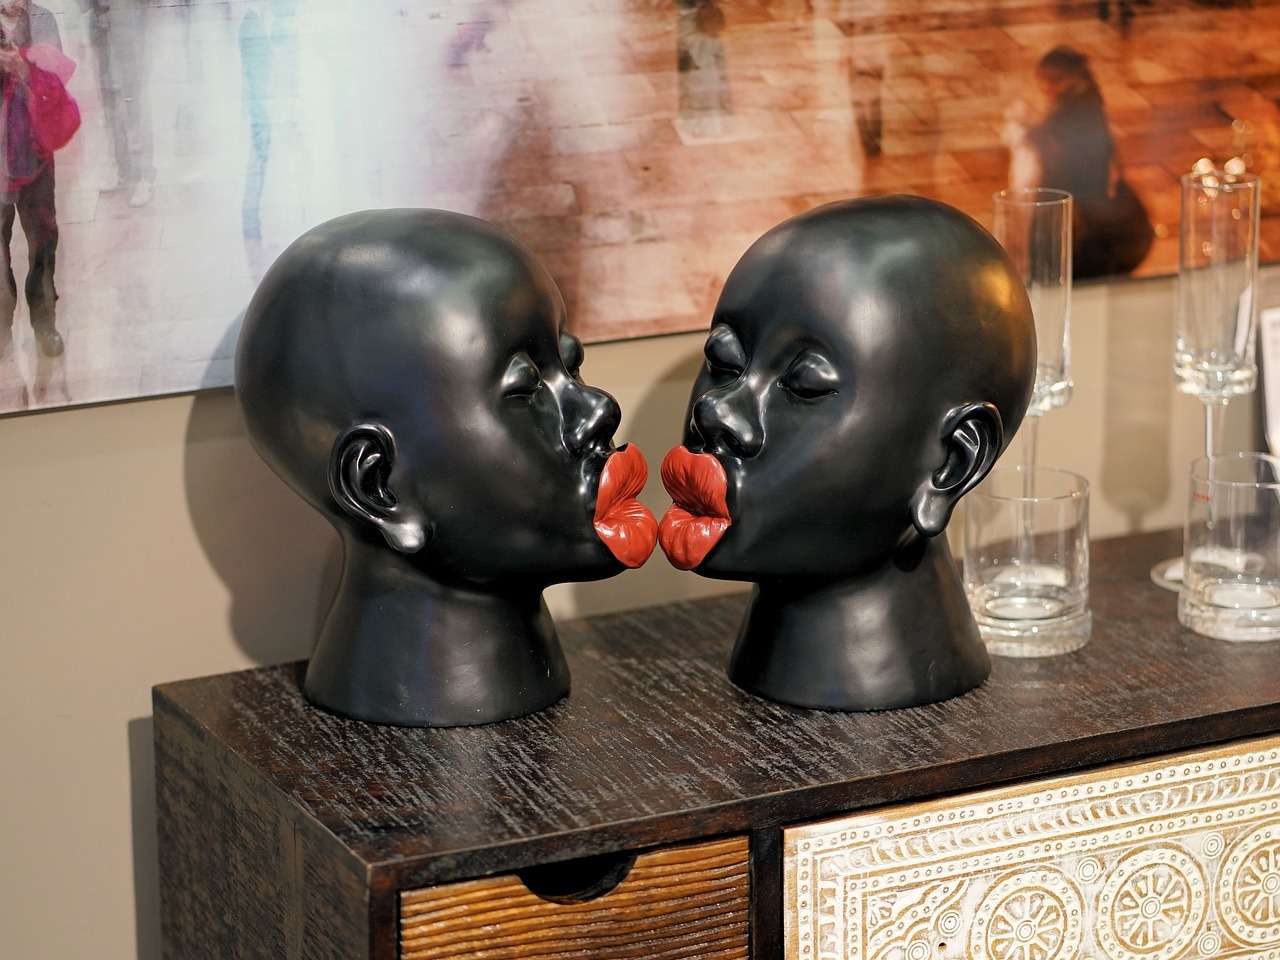 Kiss Can Tell: डिजीज या इन्फेक्शन, जानिए क्या है Kissing के पीछे छिपे हुए खतरे